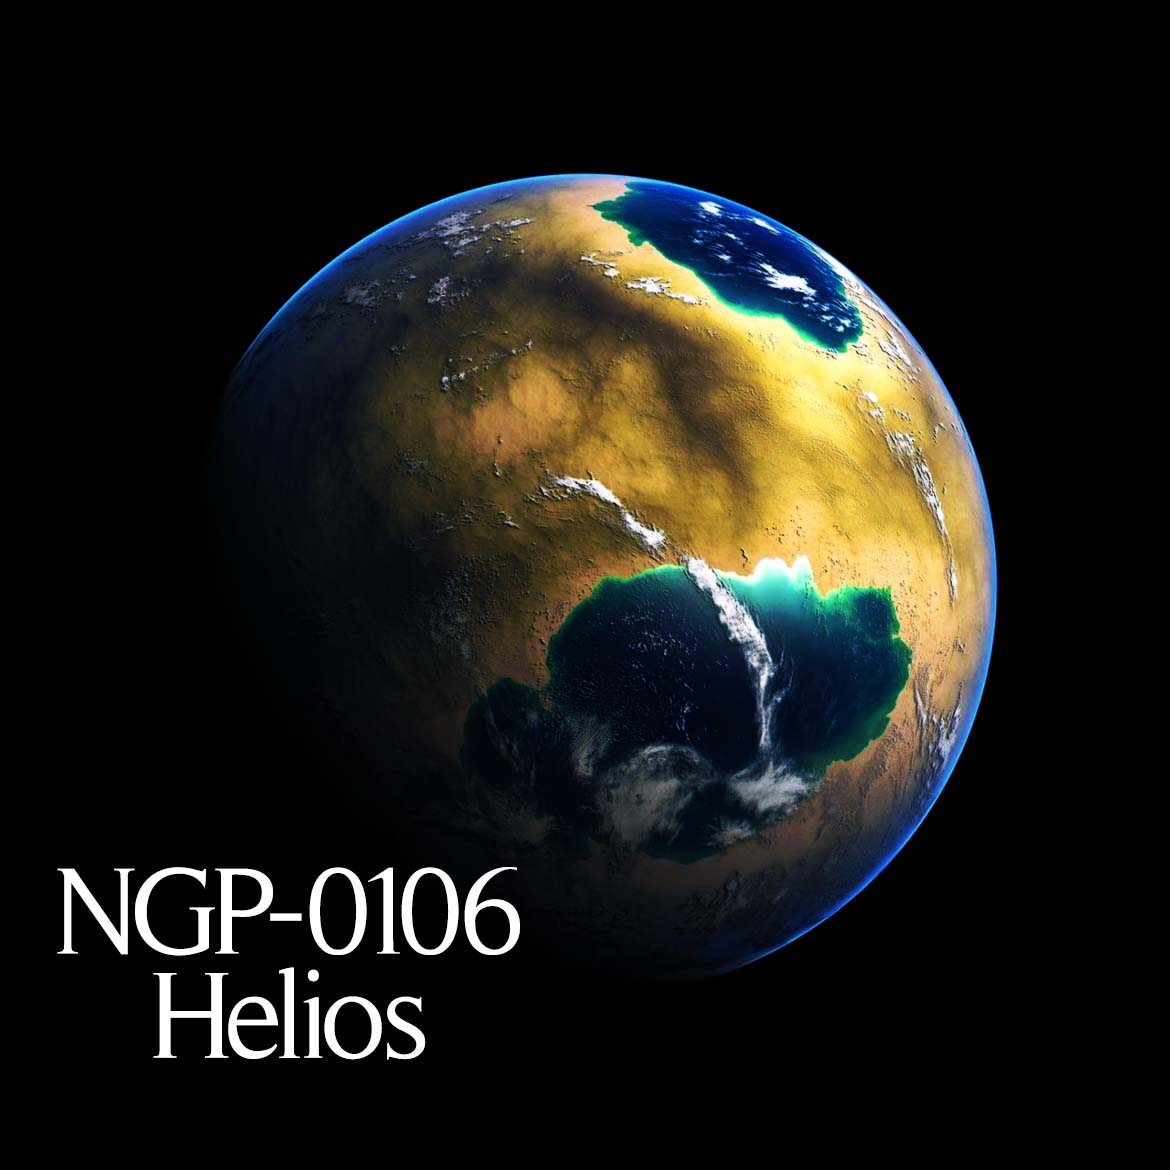 NGP-0106 Helios